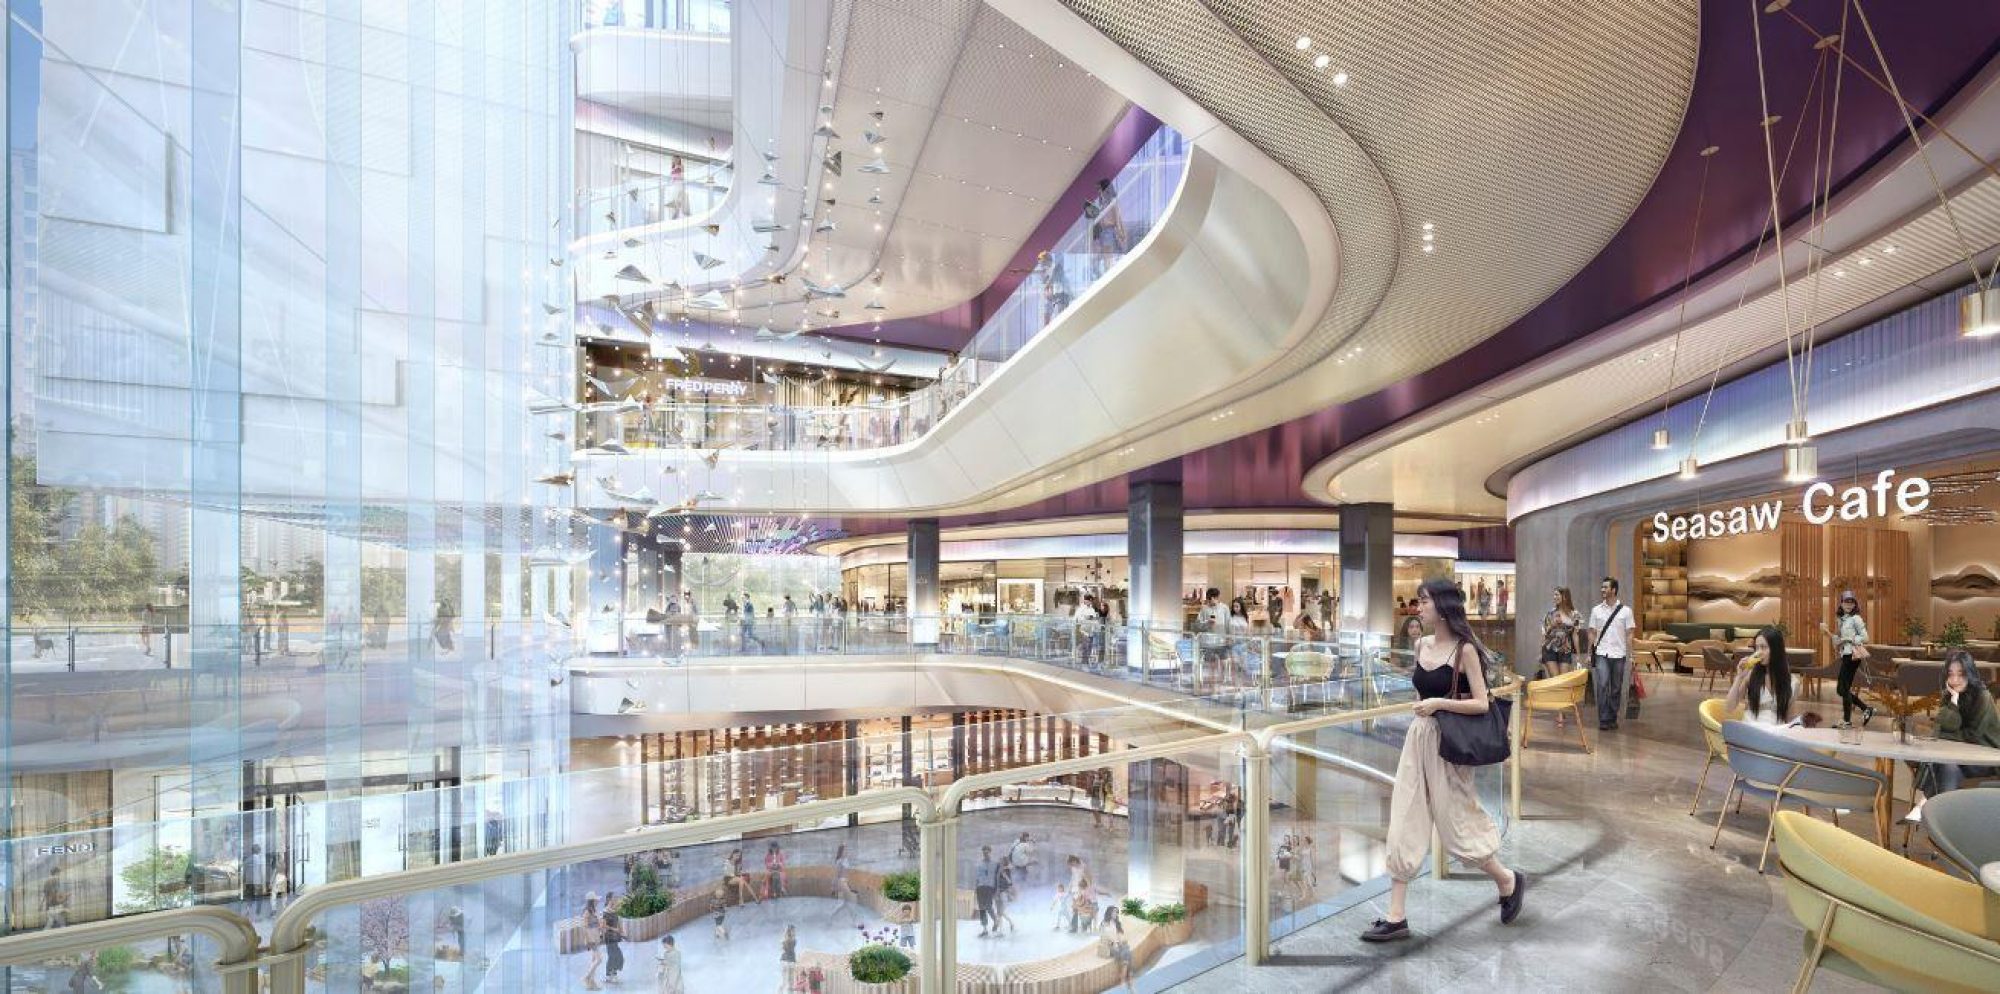 Benoy leads Interior Design for Grand Shopping Center in Chengdu | News